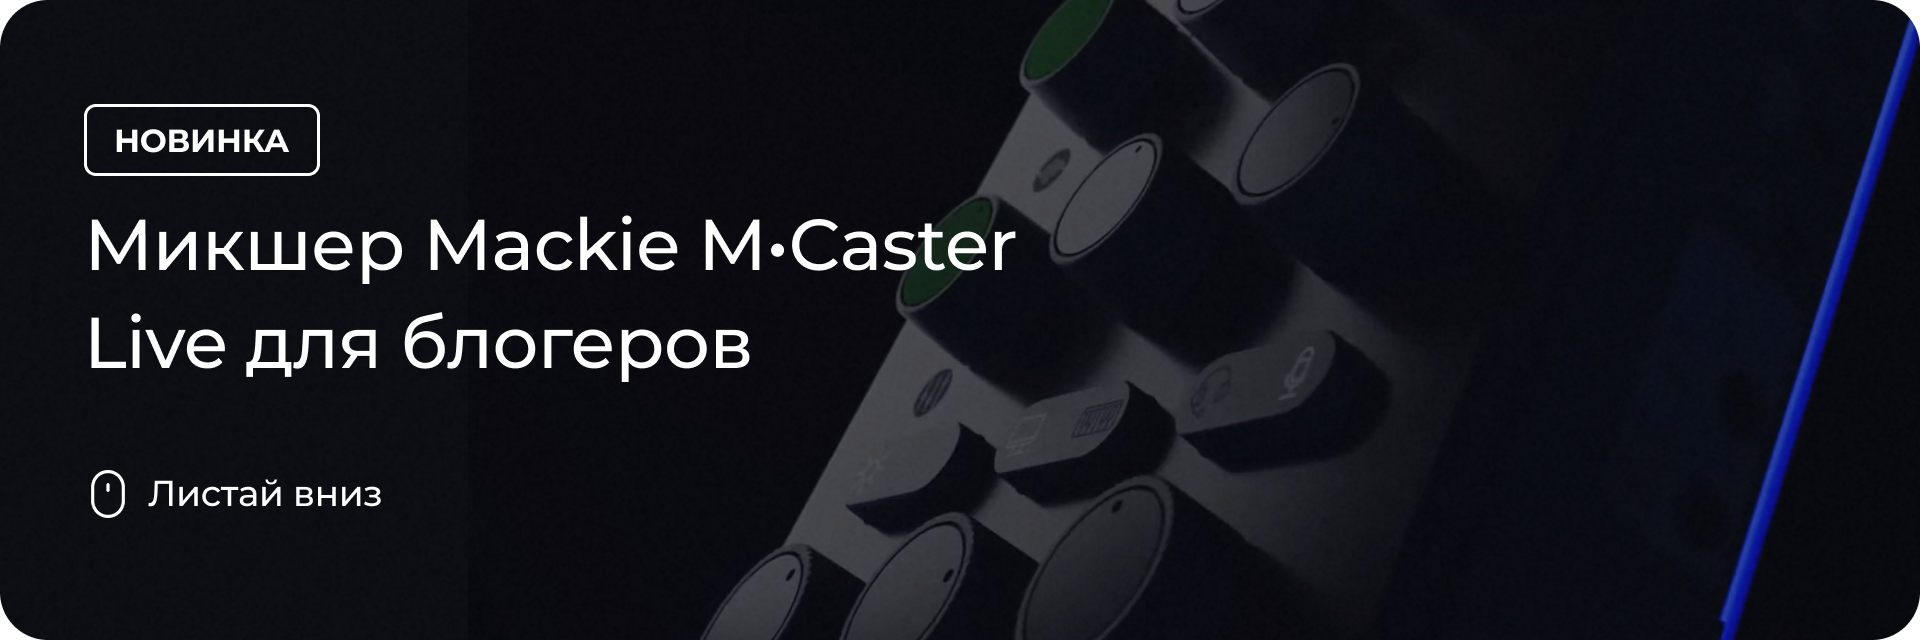 Микшер Mackie M•Caster Live для блогеров